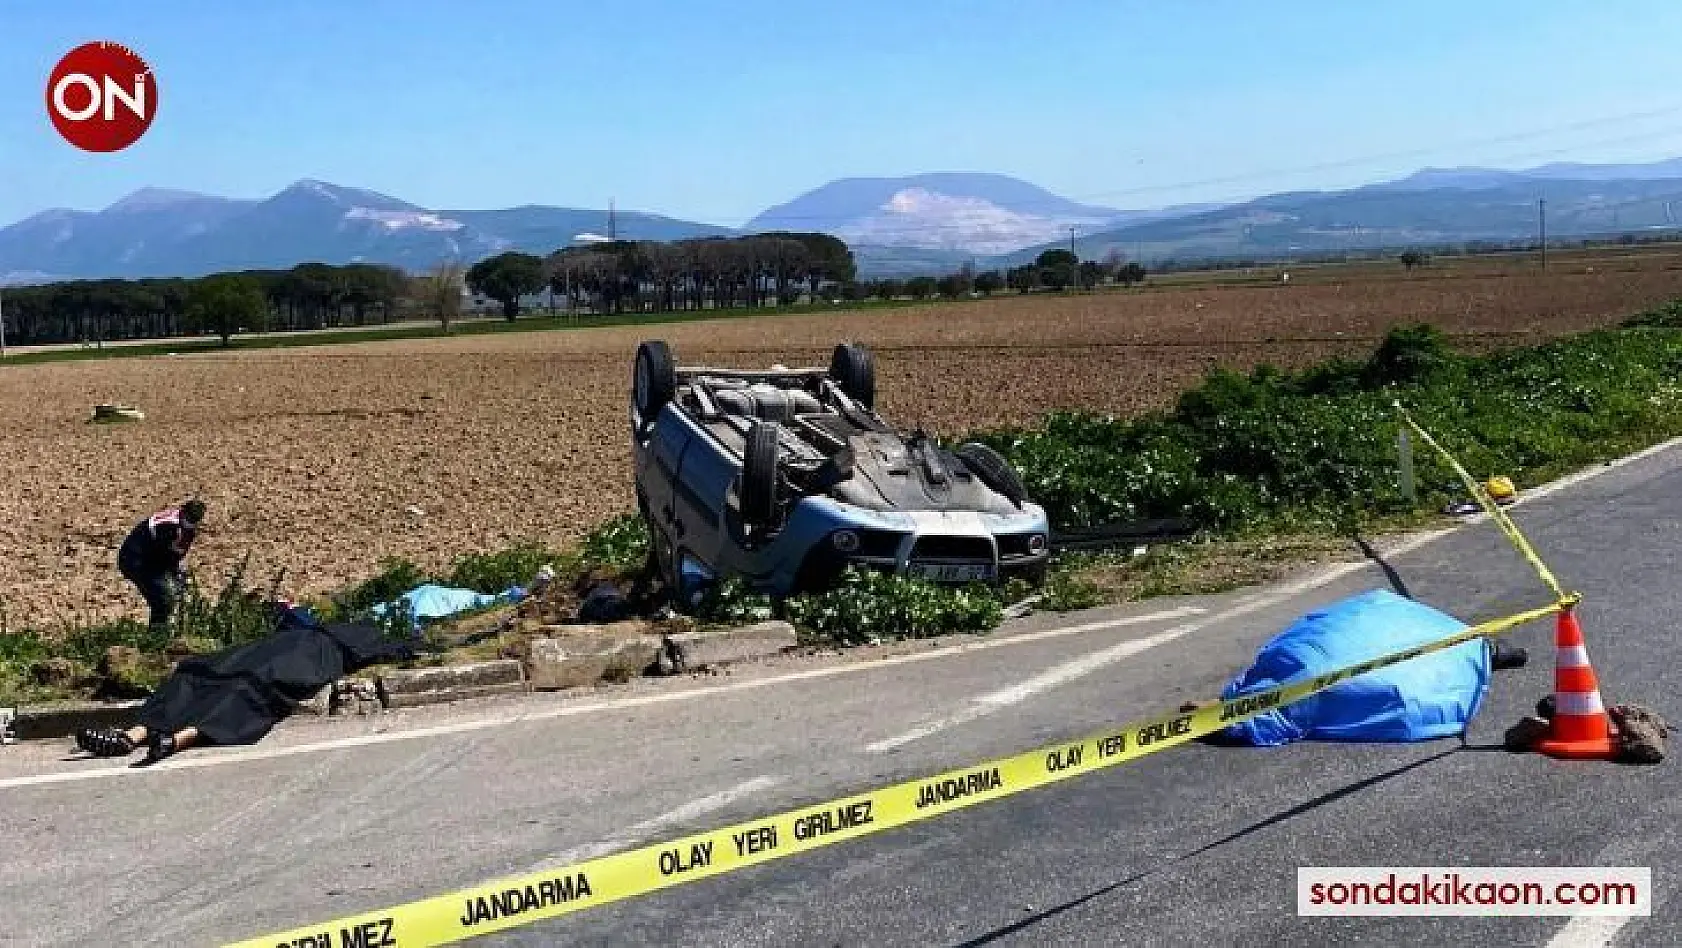 İzmir'de süt kamyonu ile hafif ticari araç çapıştı: 3 ölü, 4 ağır yaralı